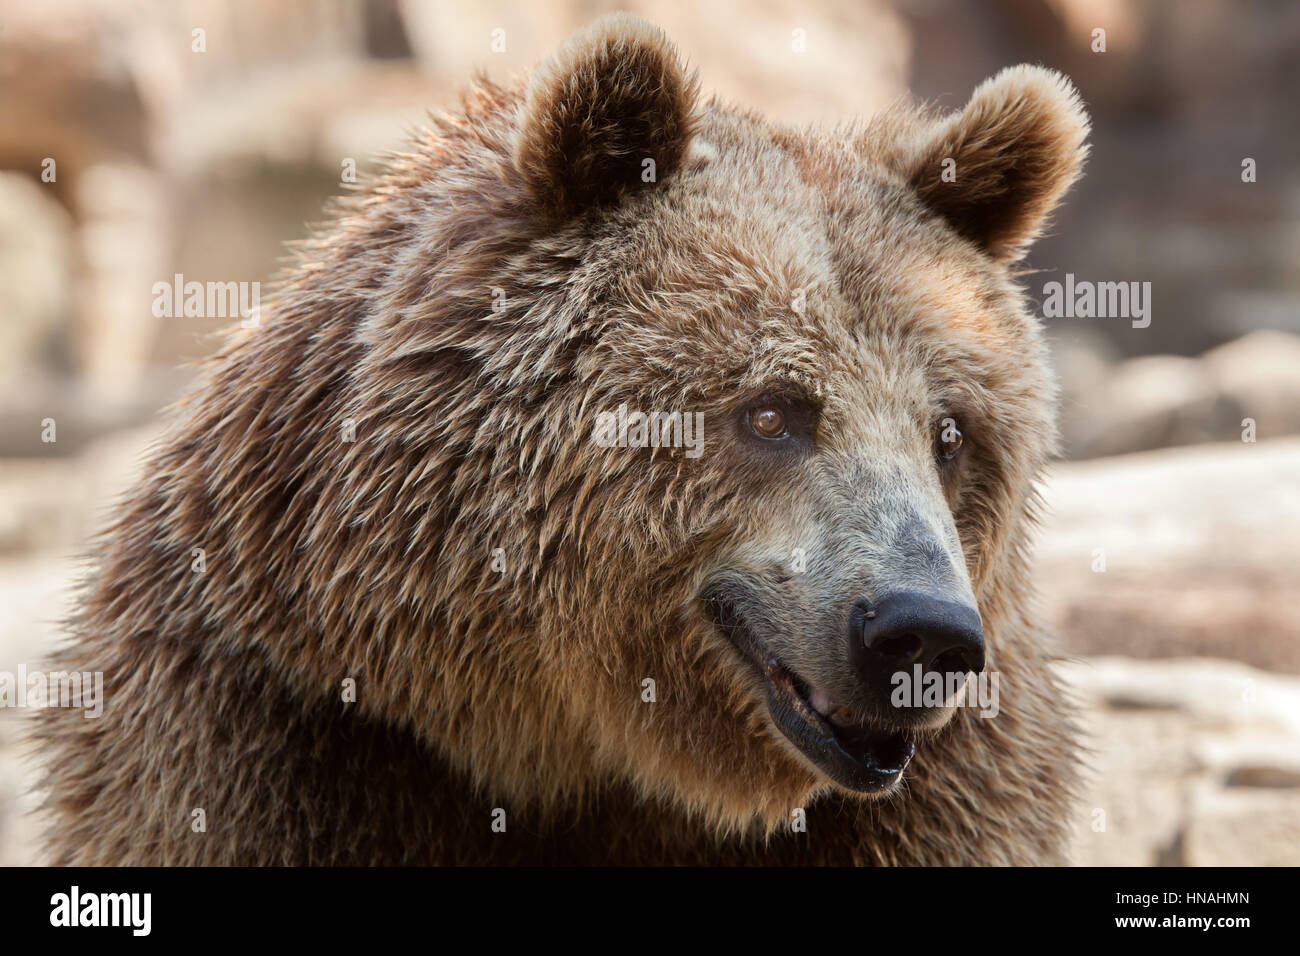 Euroasiática de oso pardo (Ursus arctos arctos), también conocido como el oso pardo europeo. Foto de stock